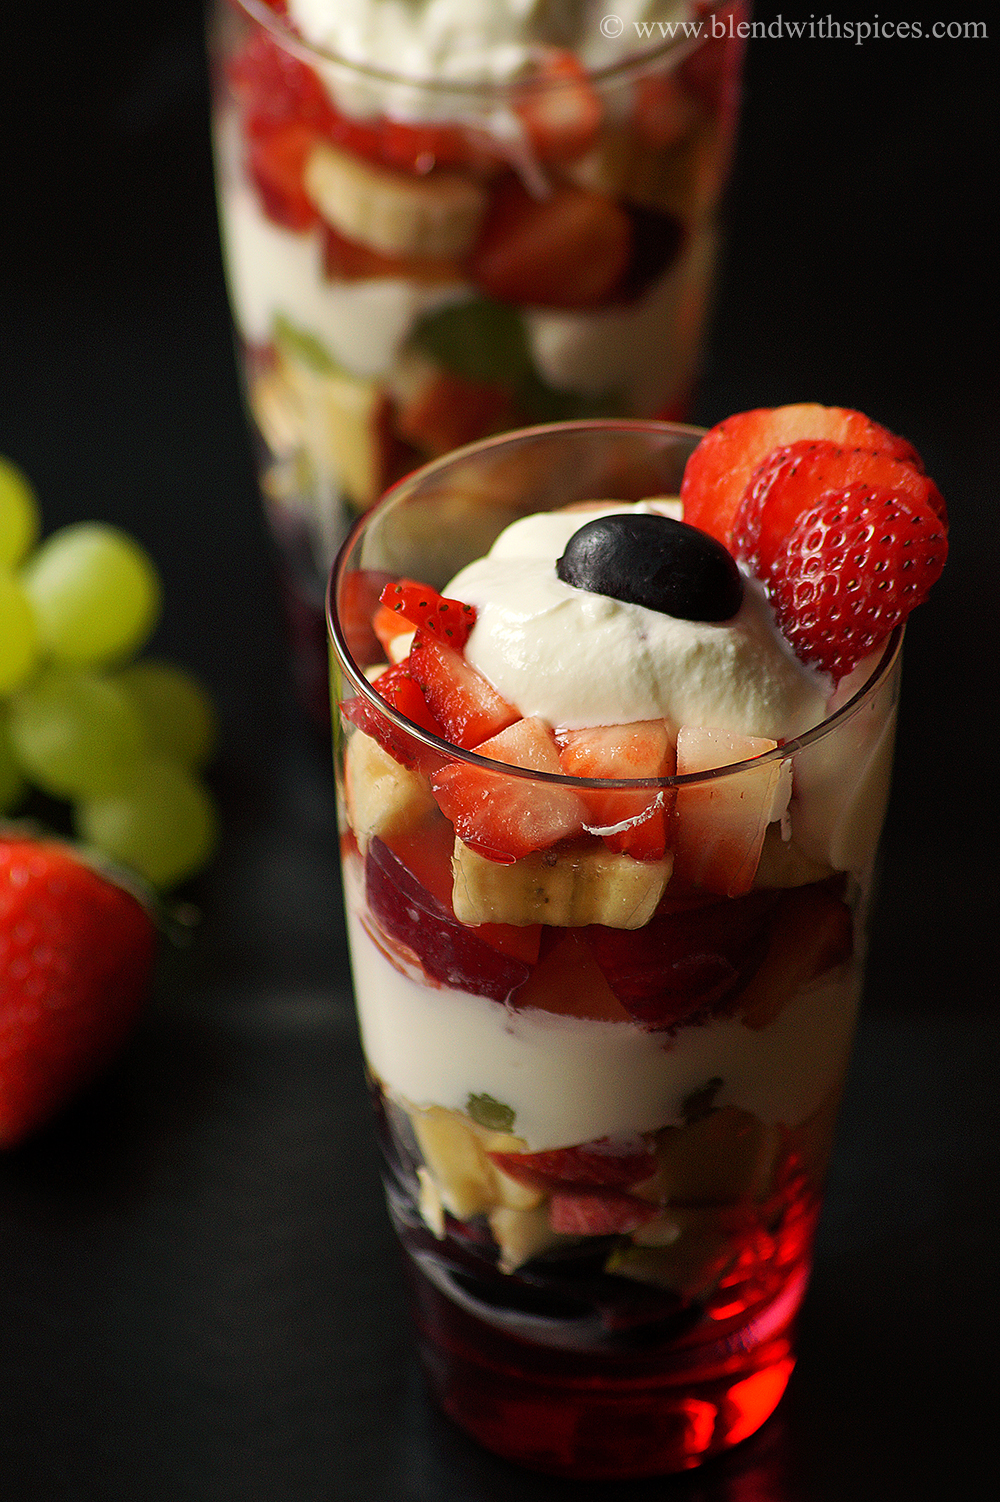 healthy yogurt parfait recipe, parfait dessert recipes, how to make fruit and yogurt parfait recipe